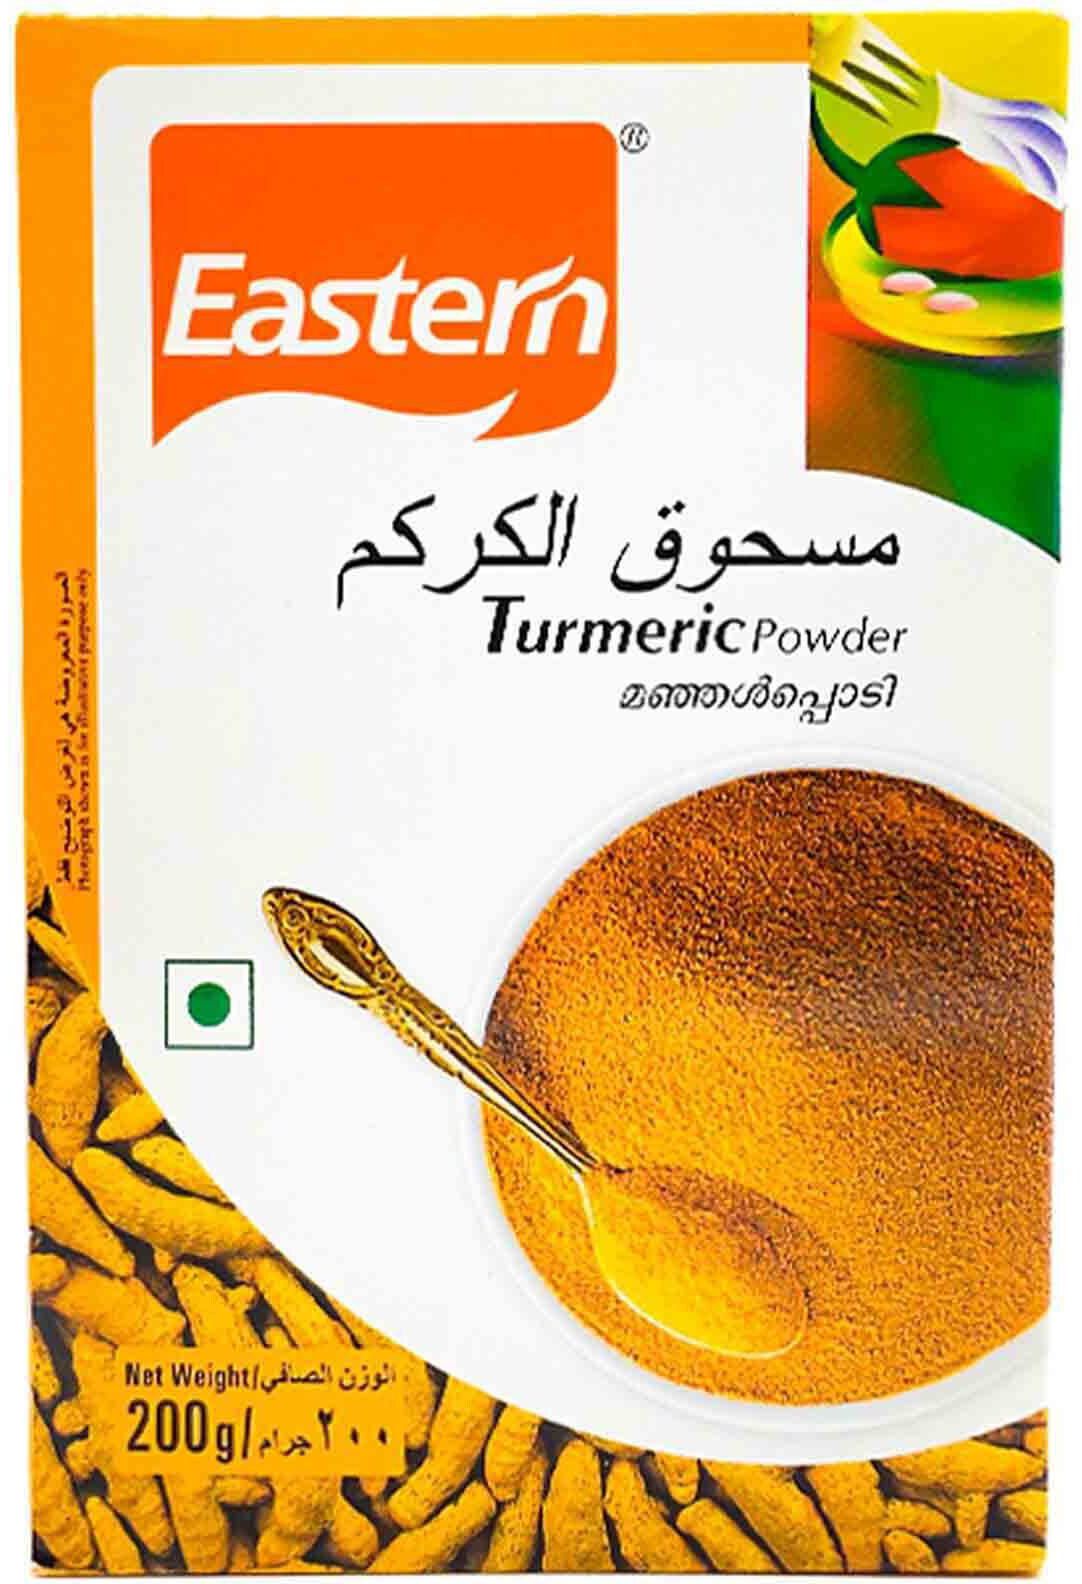 Eastern turmeric powder 200g